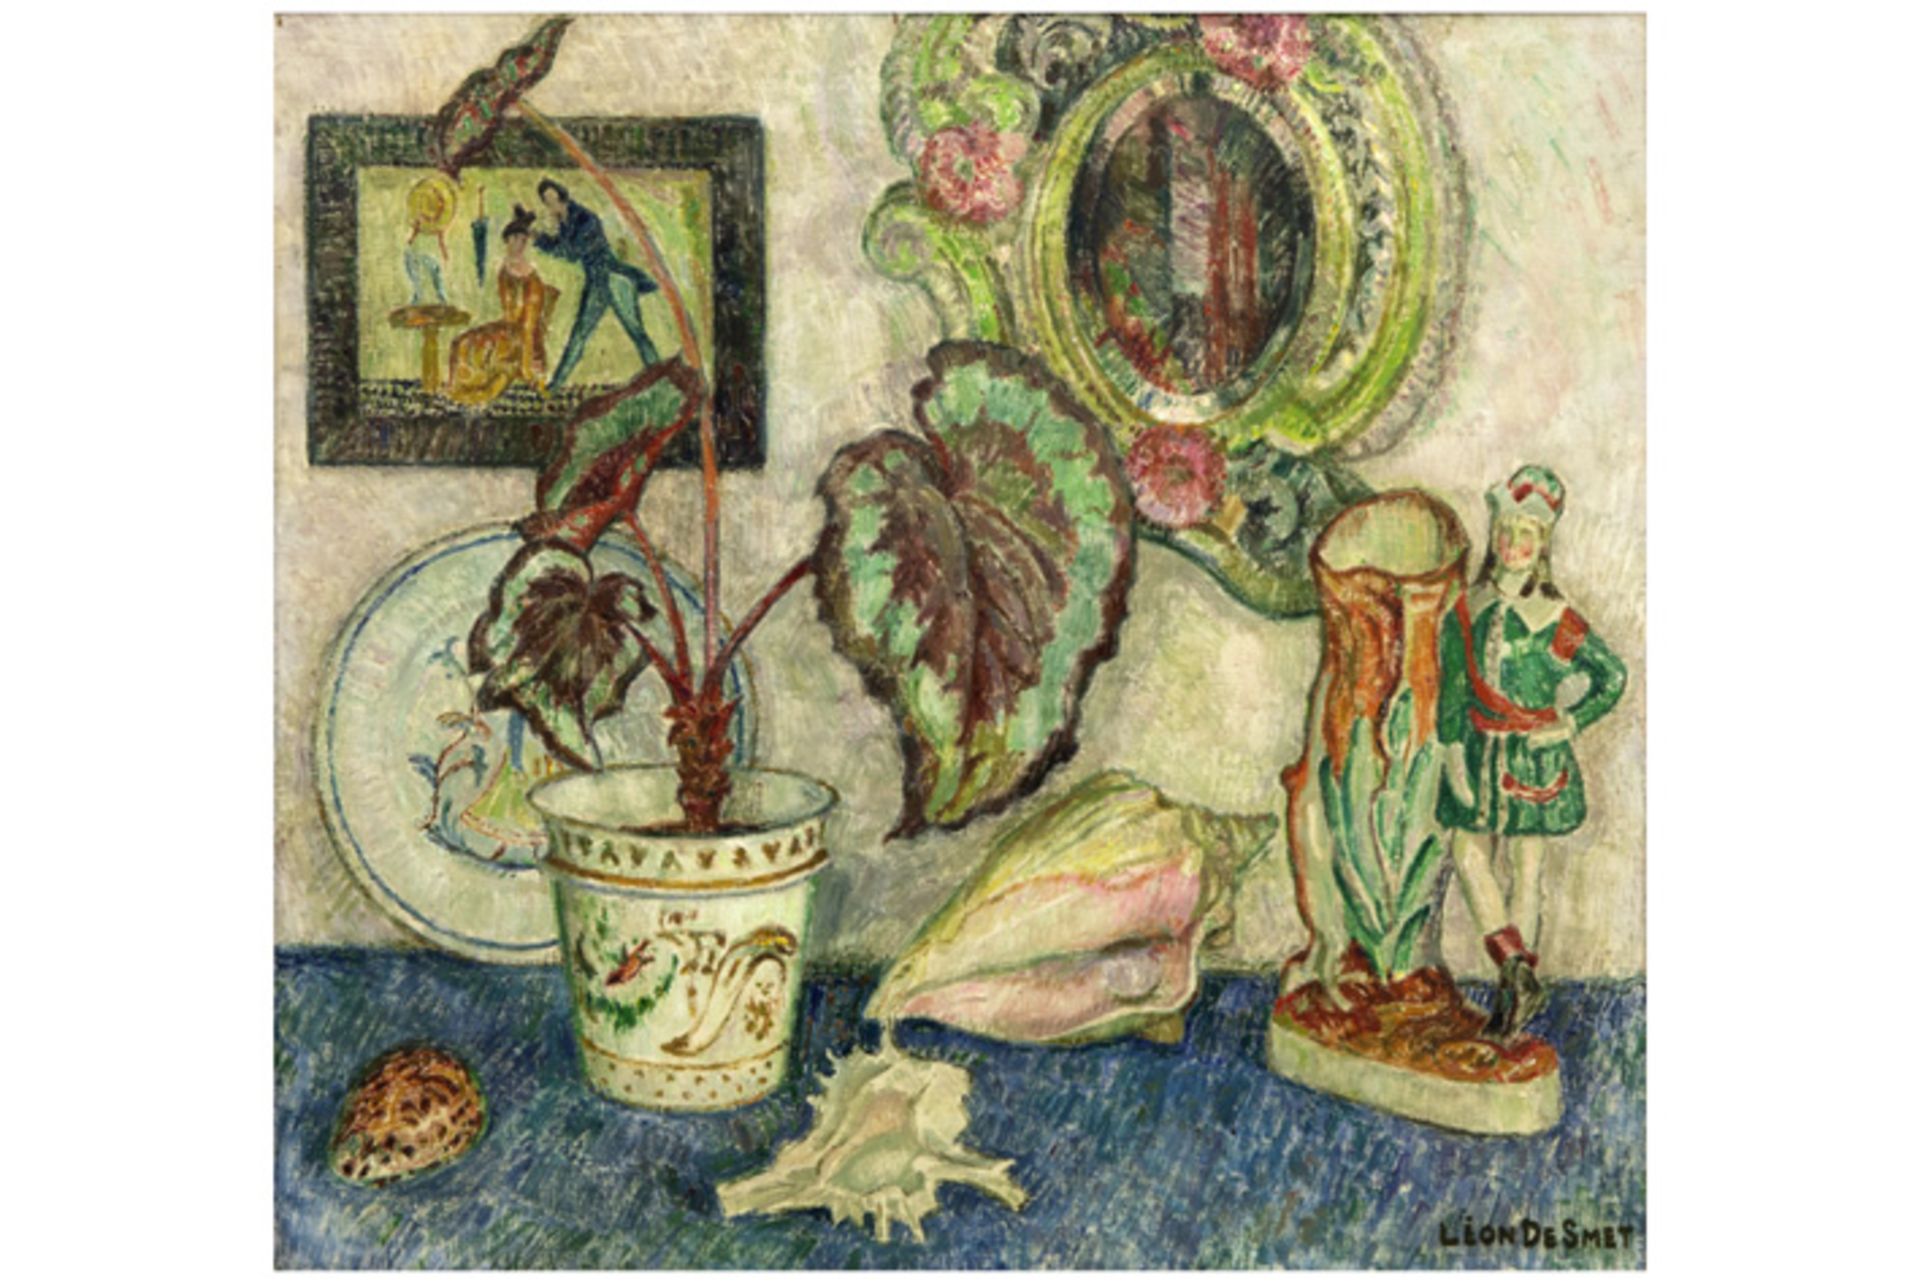 DE SMET LÉON (1888 - 1966) olieverfschilderij op doek : "Stilleven met plant" - 60 [...] - Bild 2 aus 4